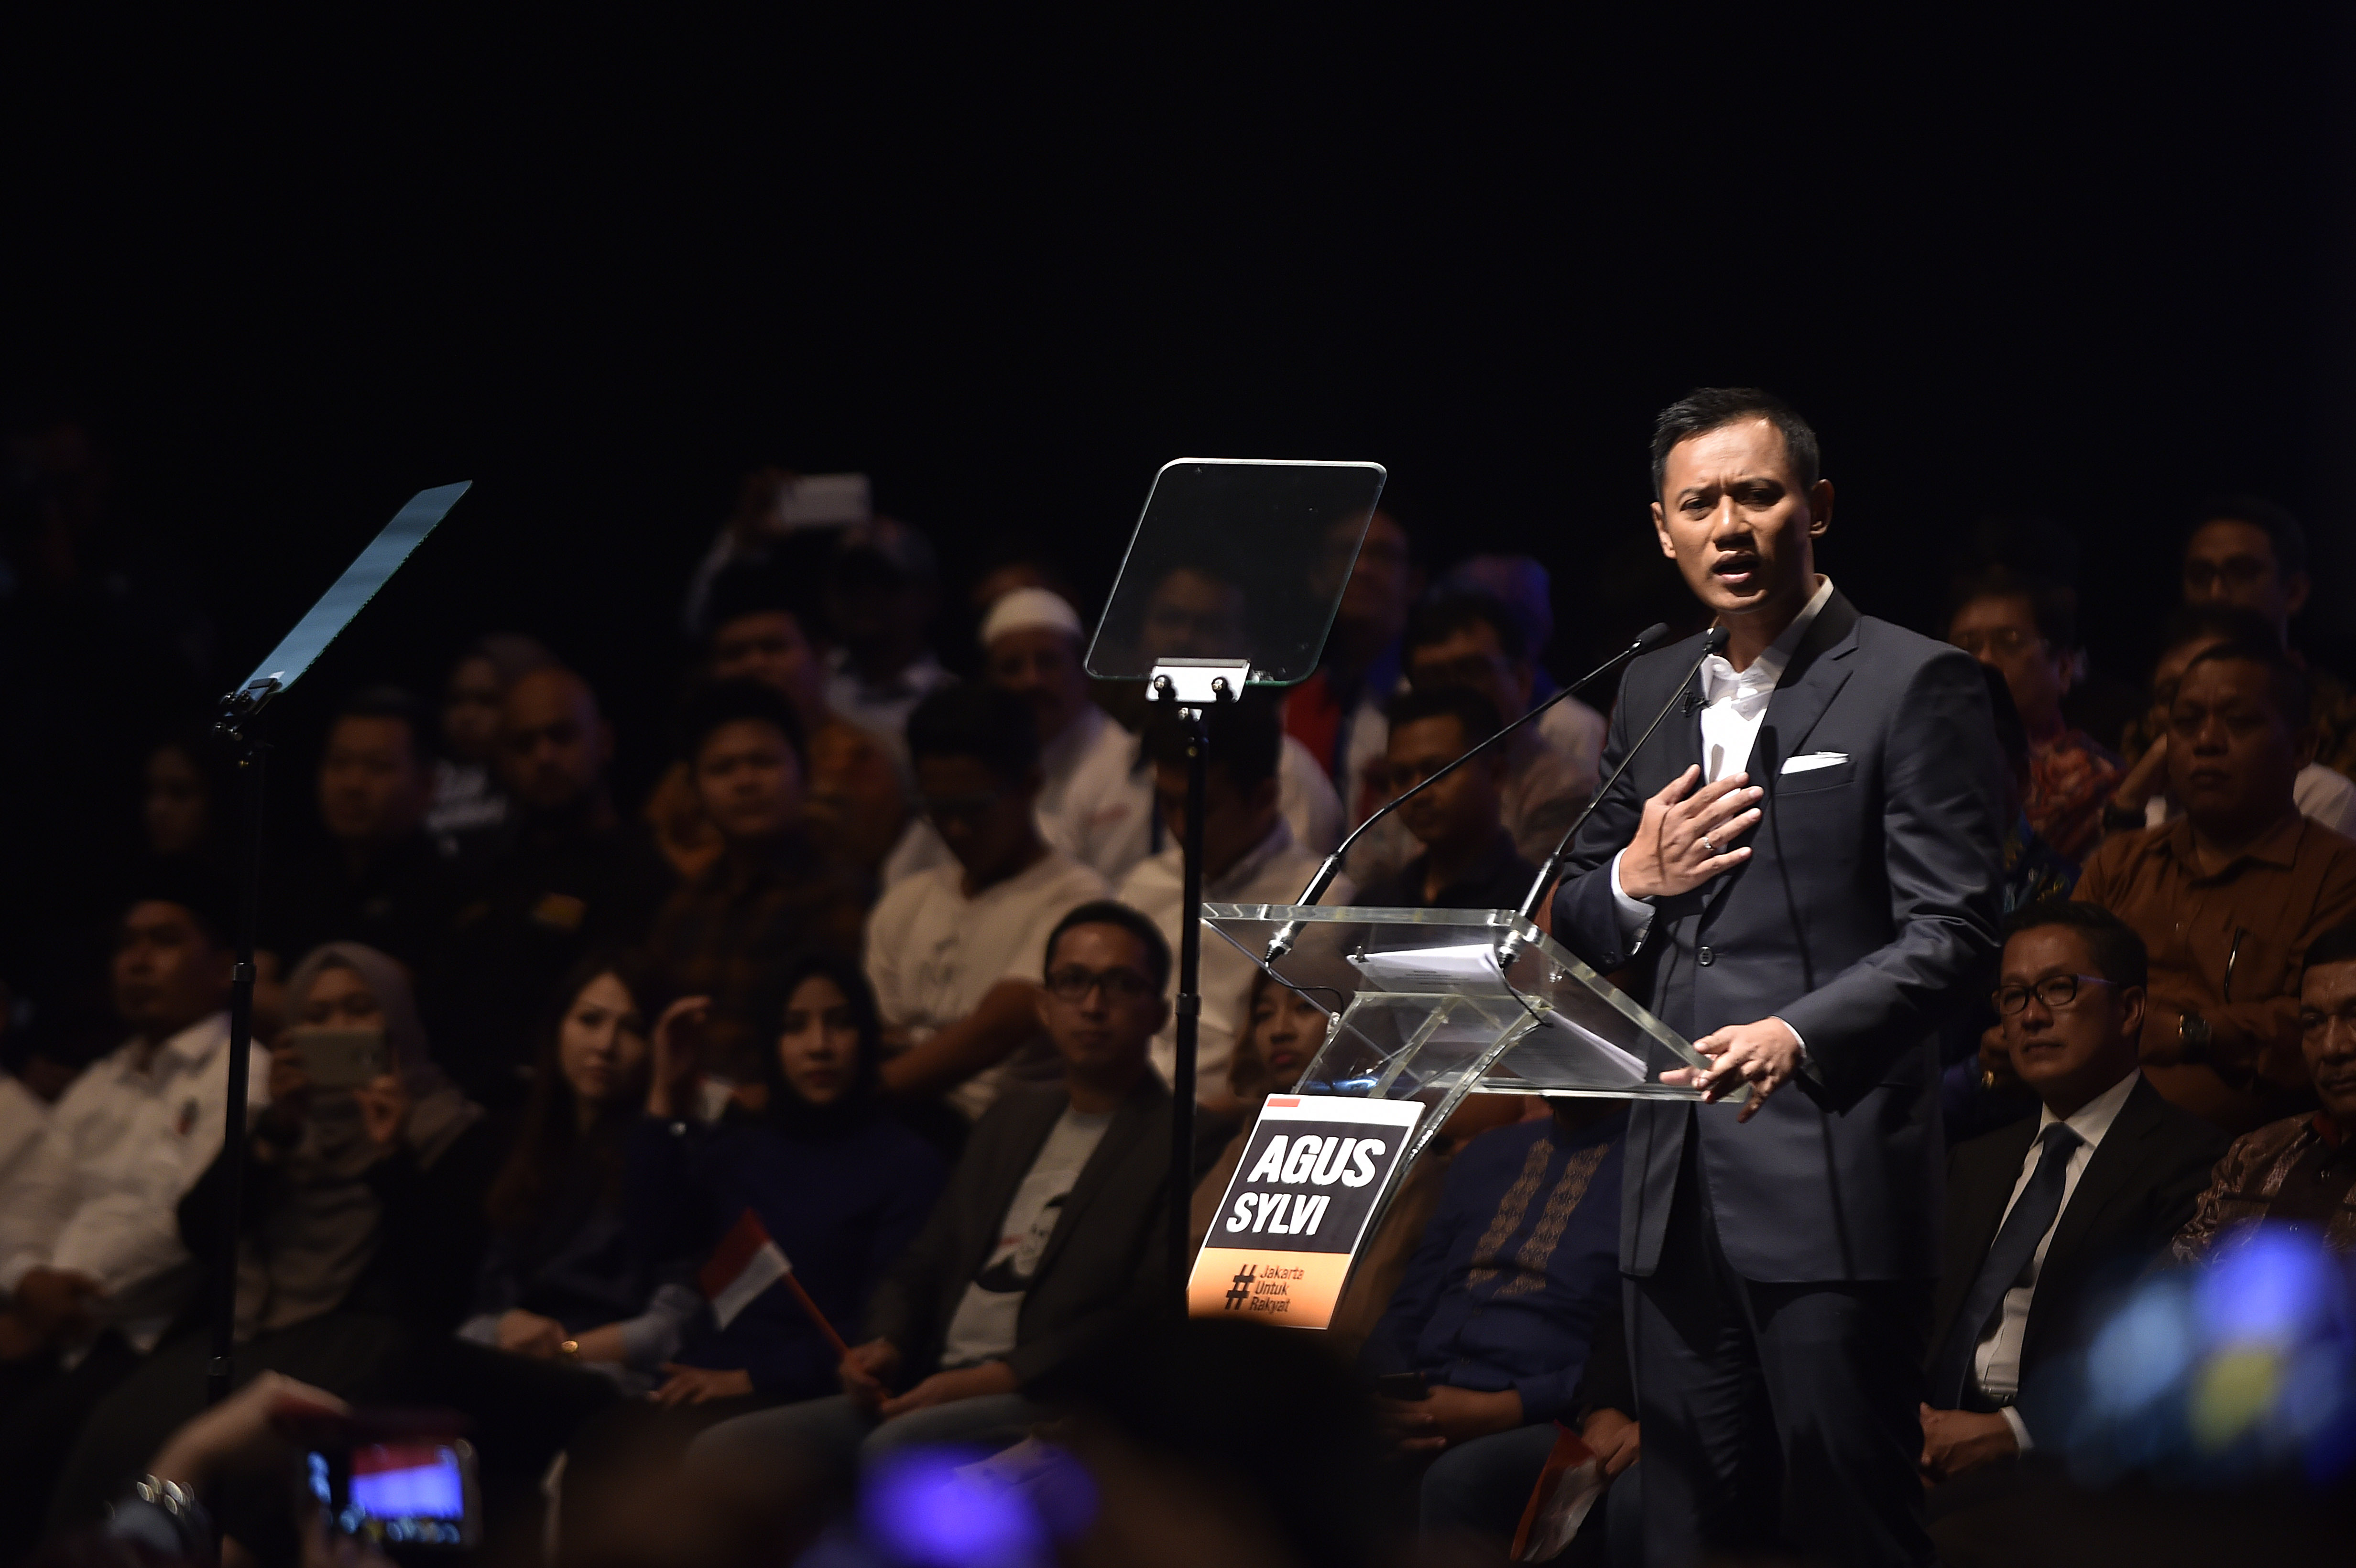 Calon Gubernur DKI Jakarta, Agus Yudhoyono, menyampaikan pidato politik di Jakarta, pada 30 Oktober 2016. Foto oleh Puspa Perwitasari/Antara 